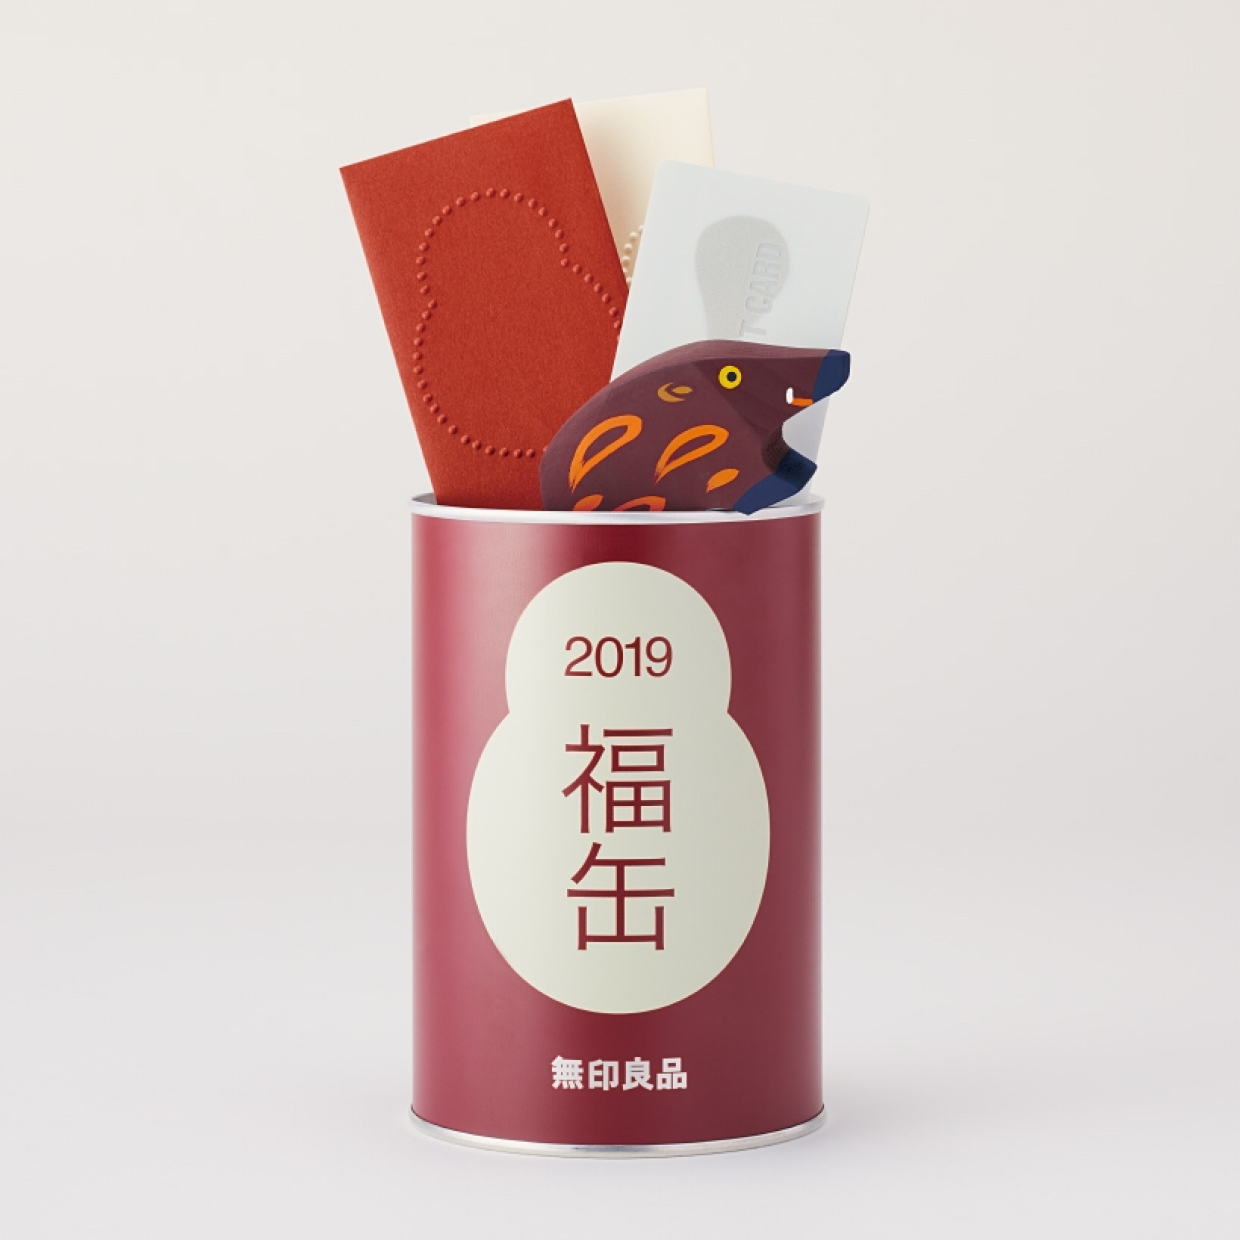  【無印良品】毎年大人気の“福缶”が2019年も発売決定！値段と同額のギフトカード付でお得すぎる♥ 